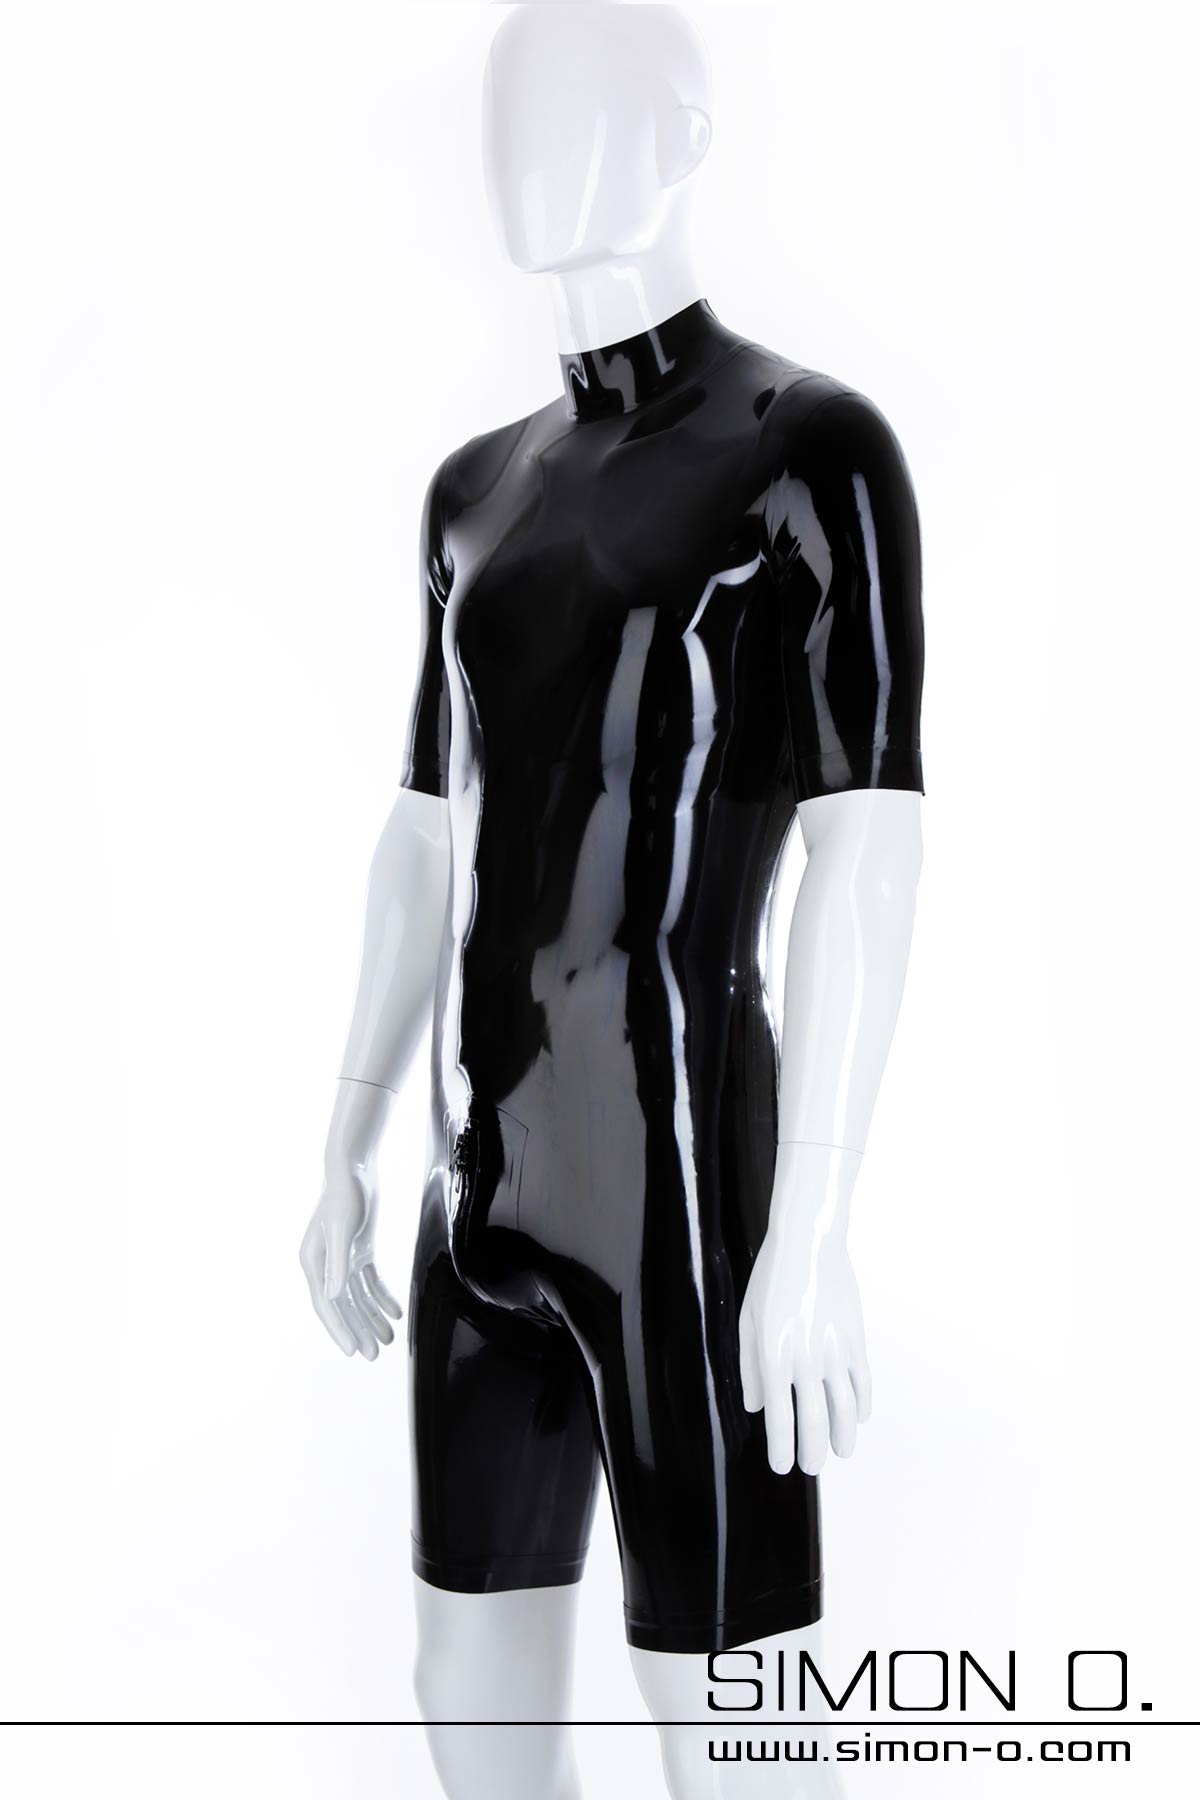 Latex Bodysuit in Schwarz mit Zipp im Schritt und kurzen Armen und Beinen